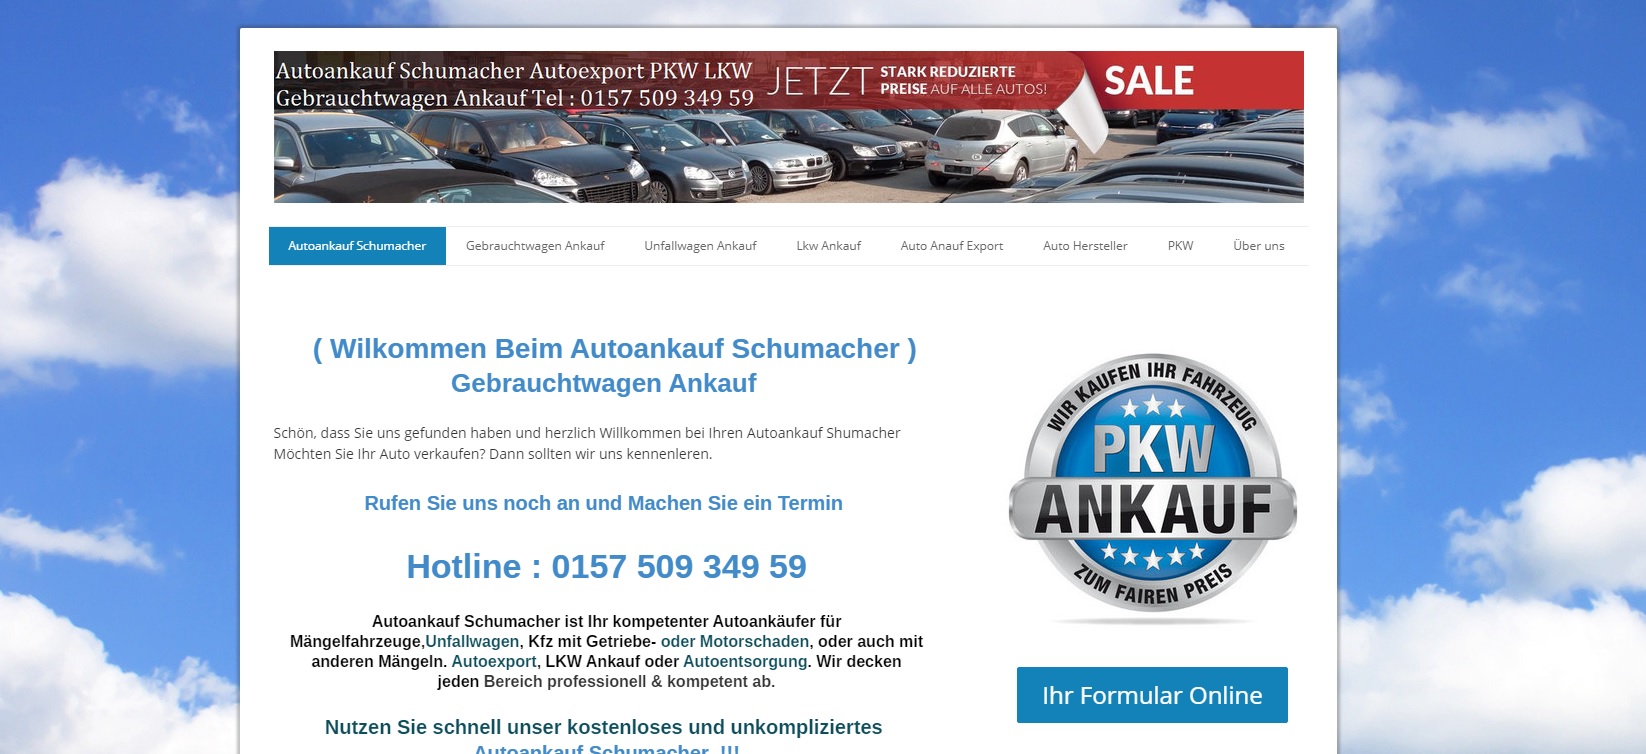 autoankauf siegen kauft bundesweit ihr fahrzeug mit abhollservice - Autoankauf Siegen kauft bundesweit ihr Fahrzeug mit Abhollservice